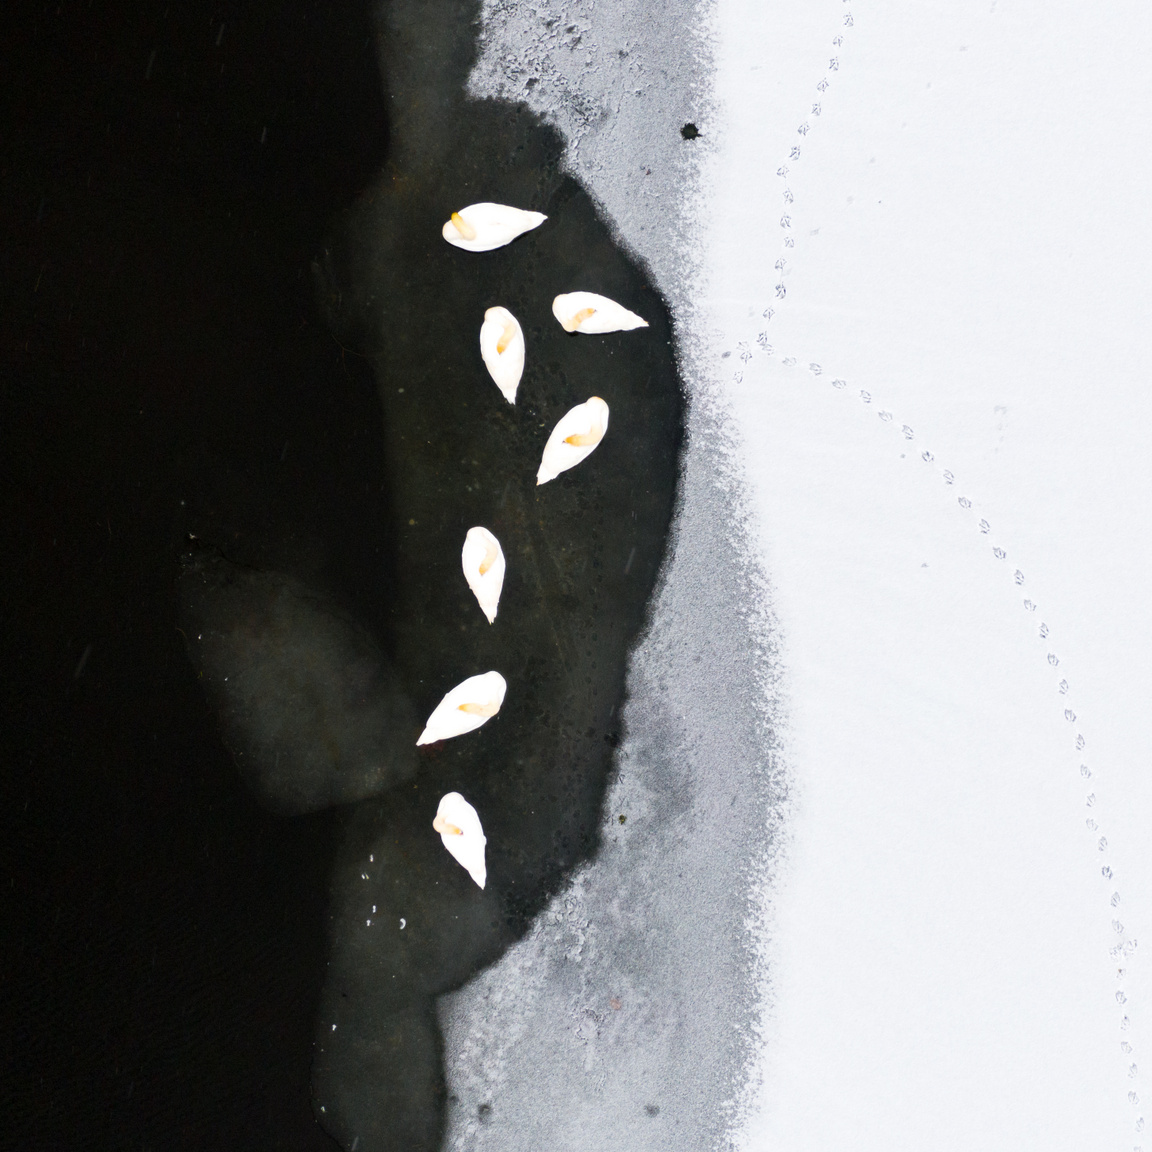 Pihenő bütykös hattyúk a Bokros-pusztán található Búzás holtág befagyott jegén, madártávlatból.
                        